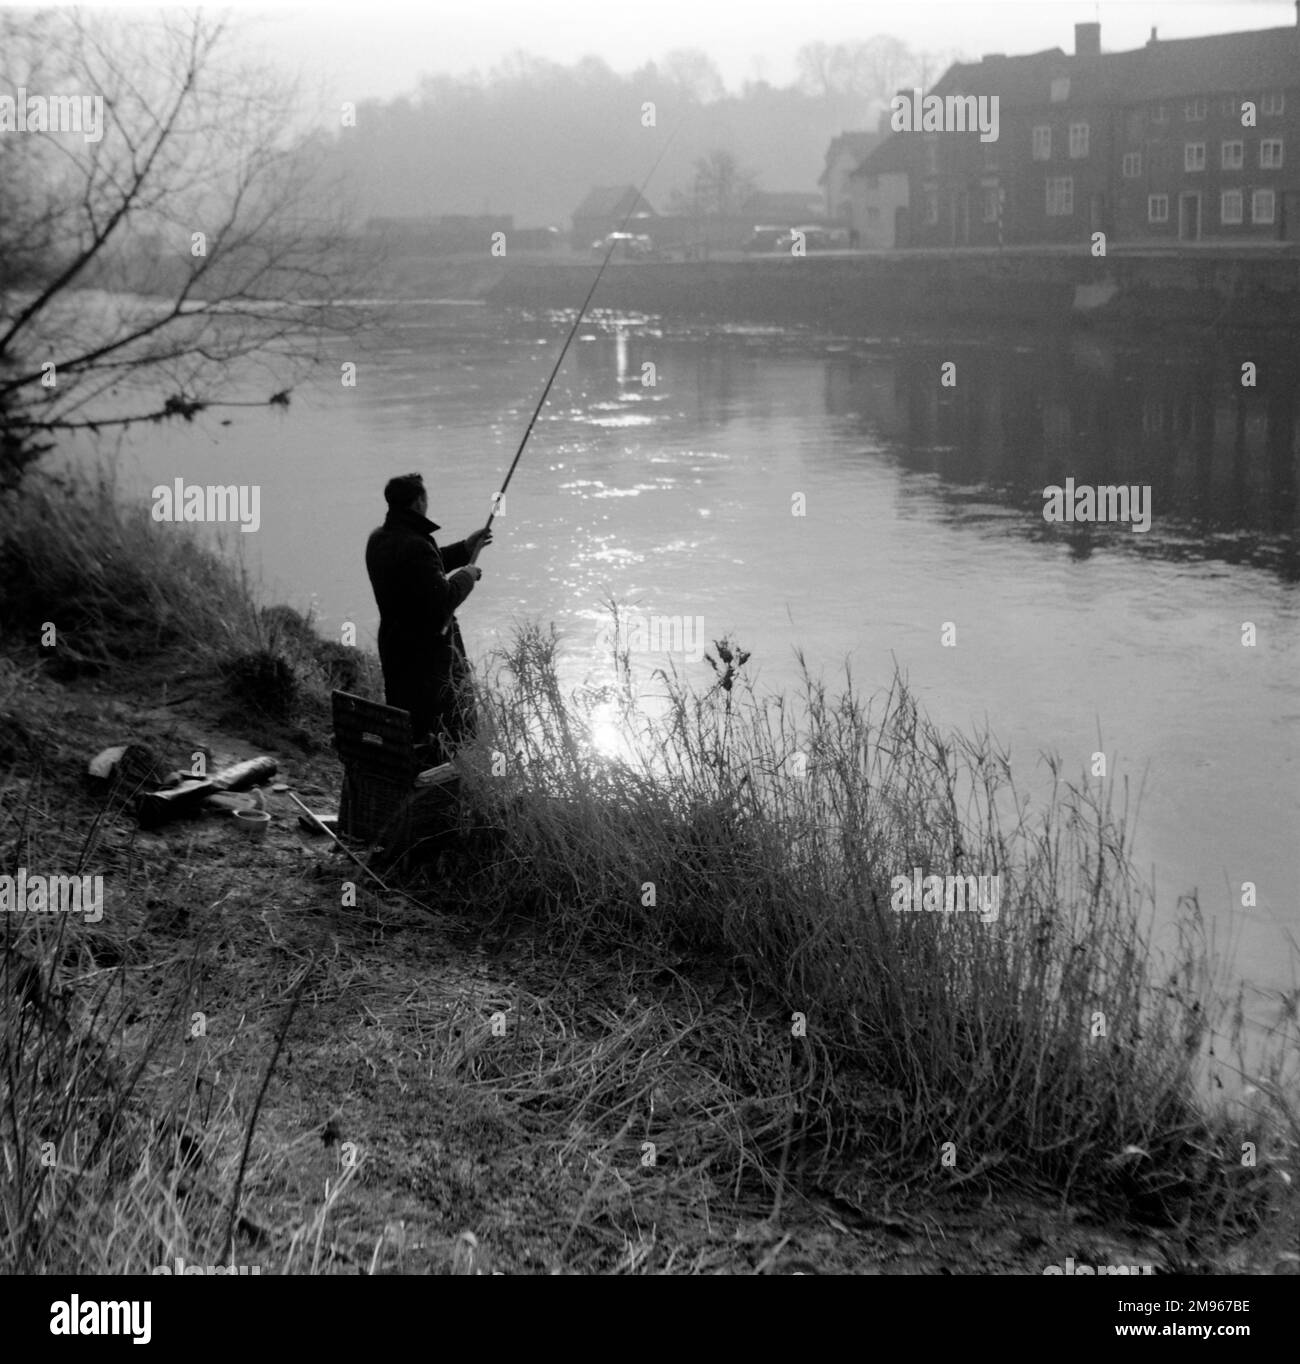 Un pêcheur à la ligne jette sa ligne dans la rivière Severn dans la lumière brumeuse du matin à Bewdley, Worcestershire. Photographie de Norman Synge Waller Budd Banque D'Images